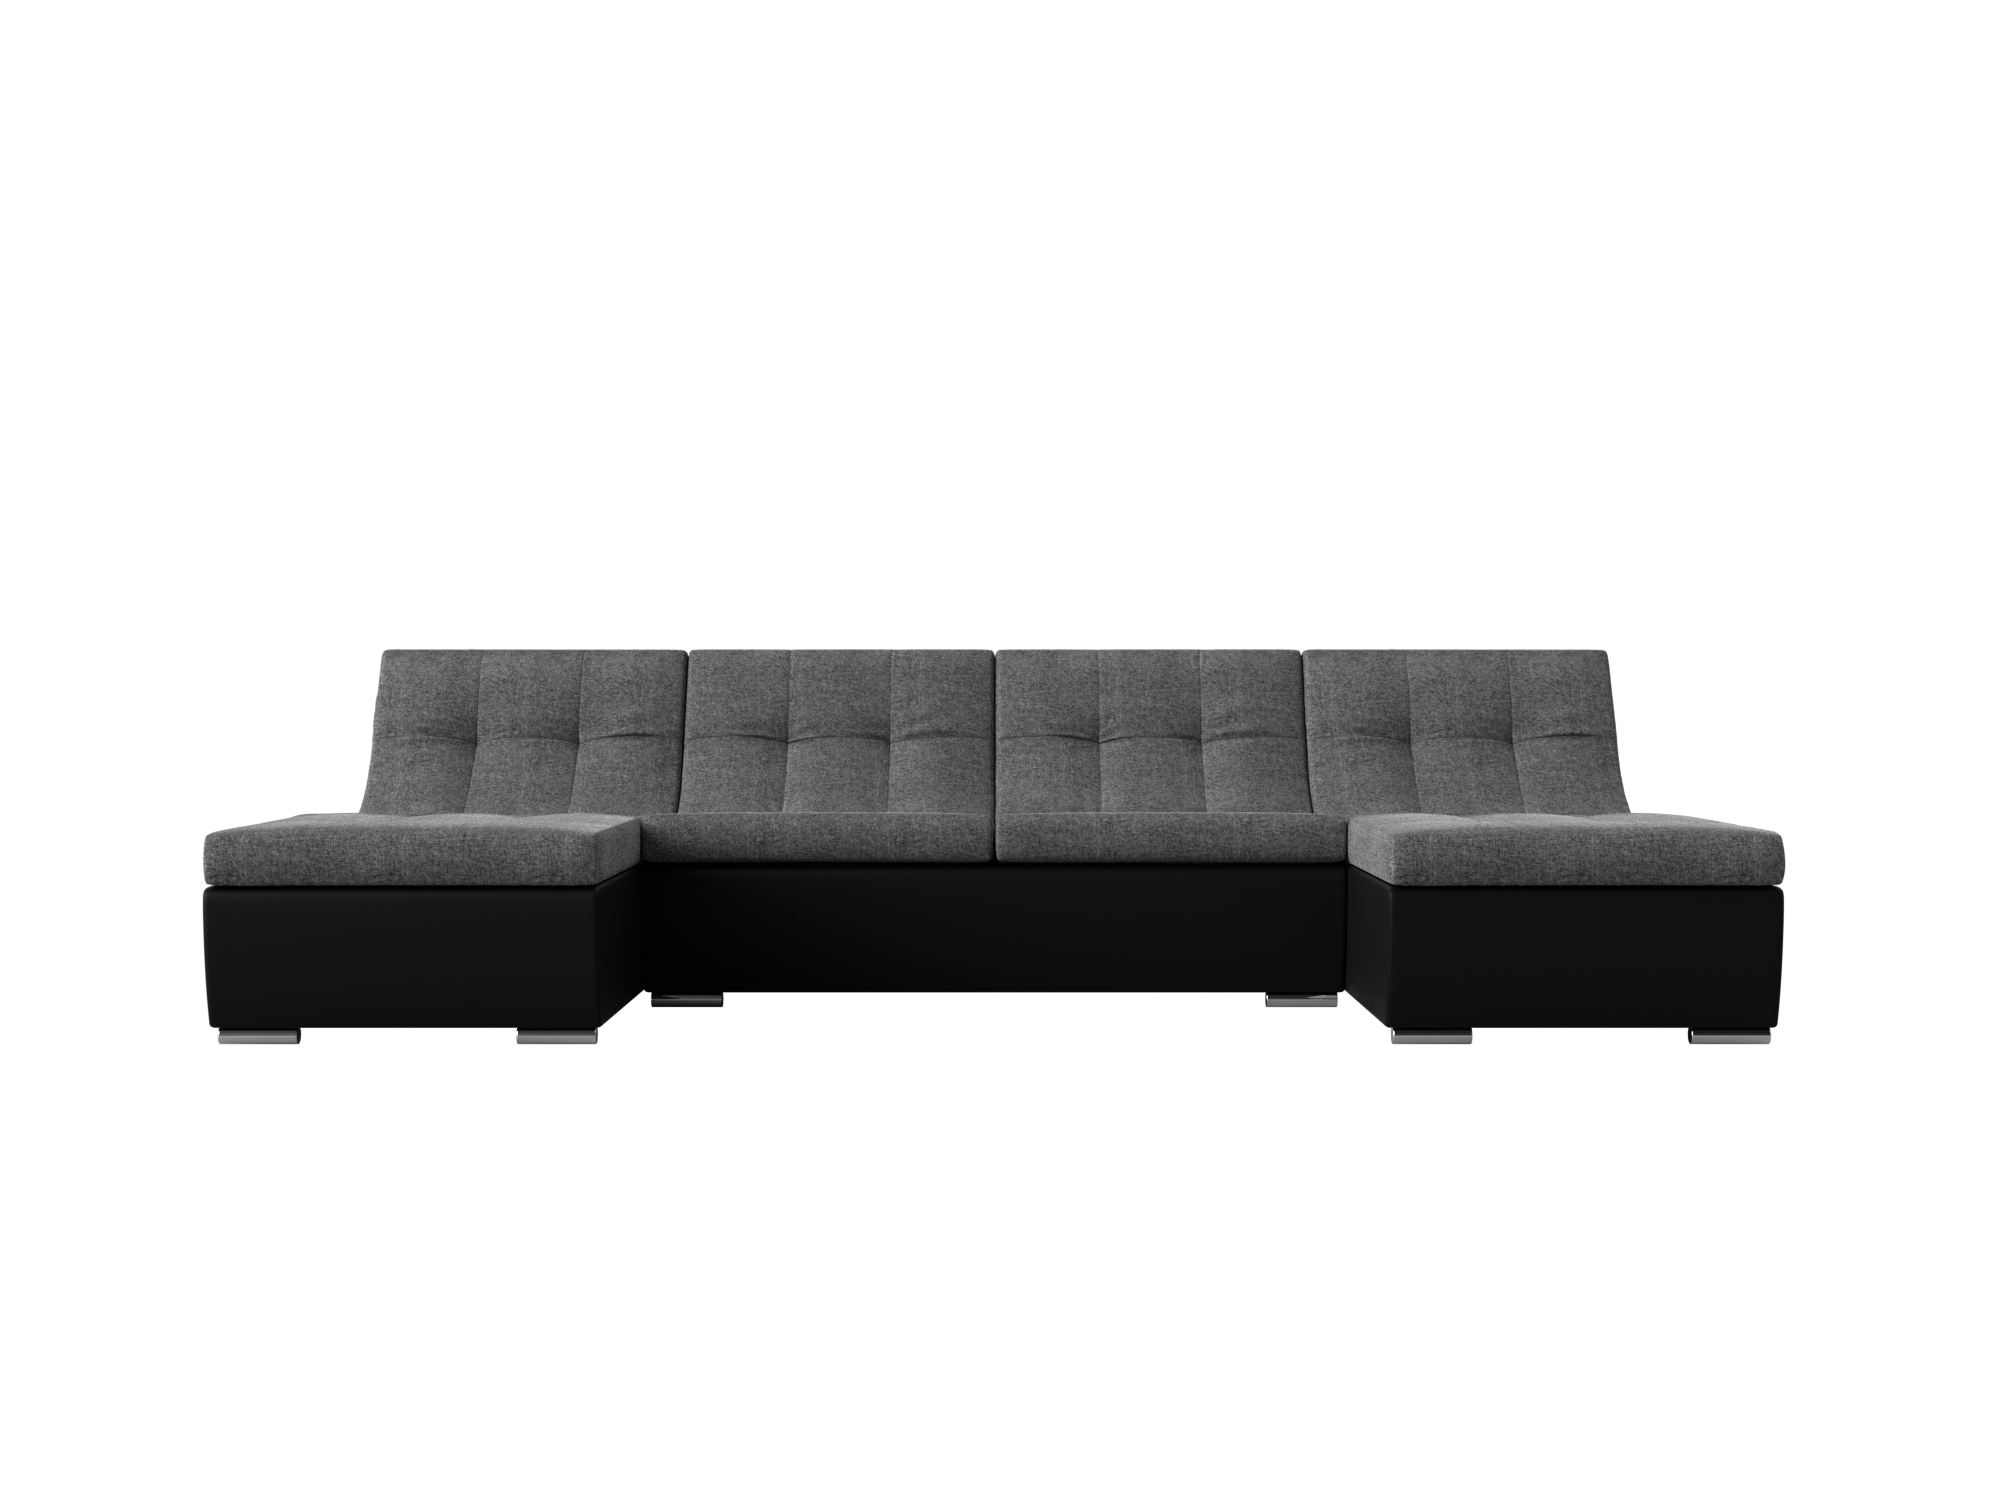 П-образный модульный диван Монреаль MebelVia Серый, Черный, Рогожка, Экокожа, ЛДСП